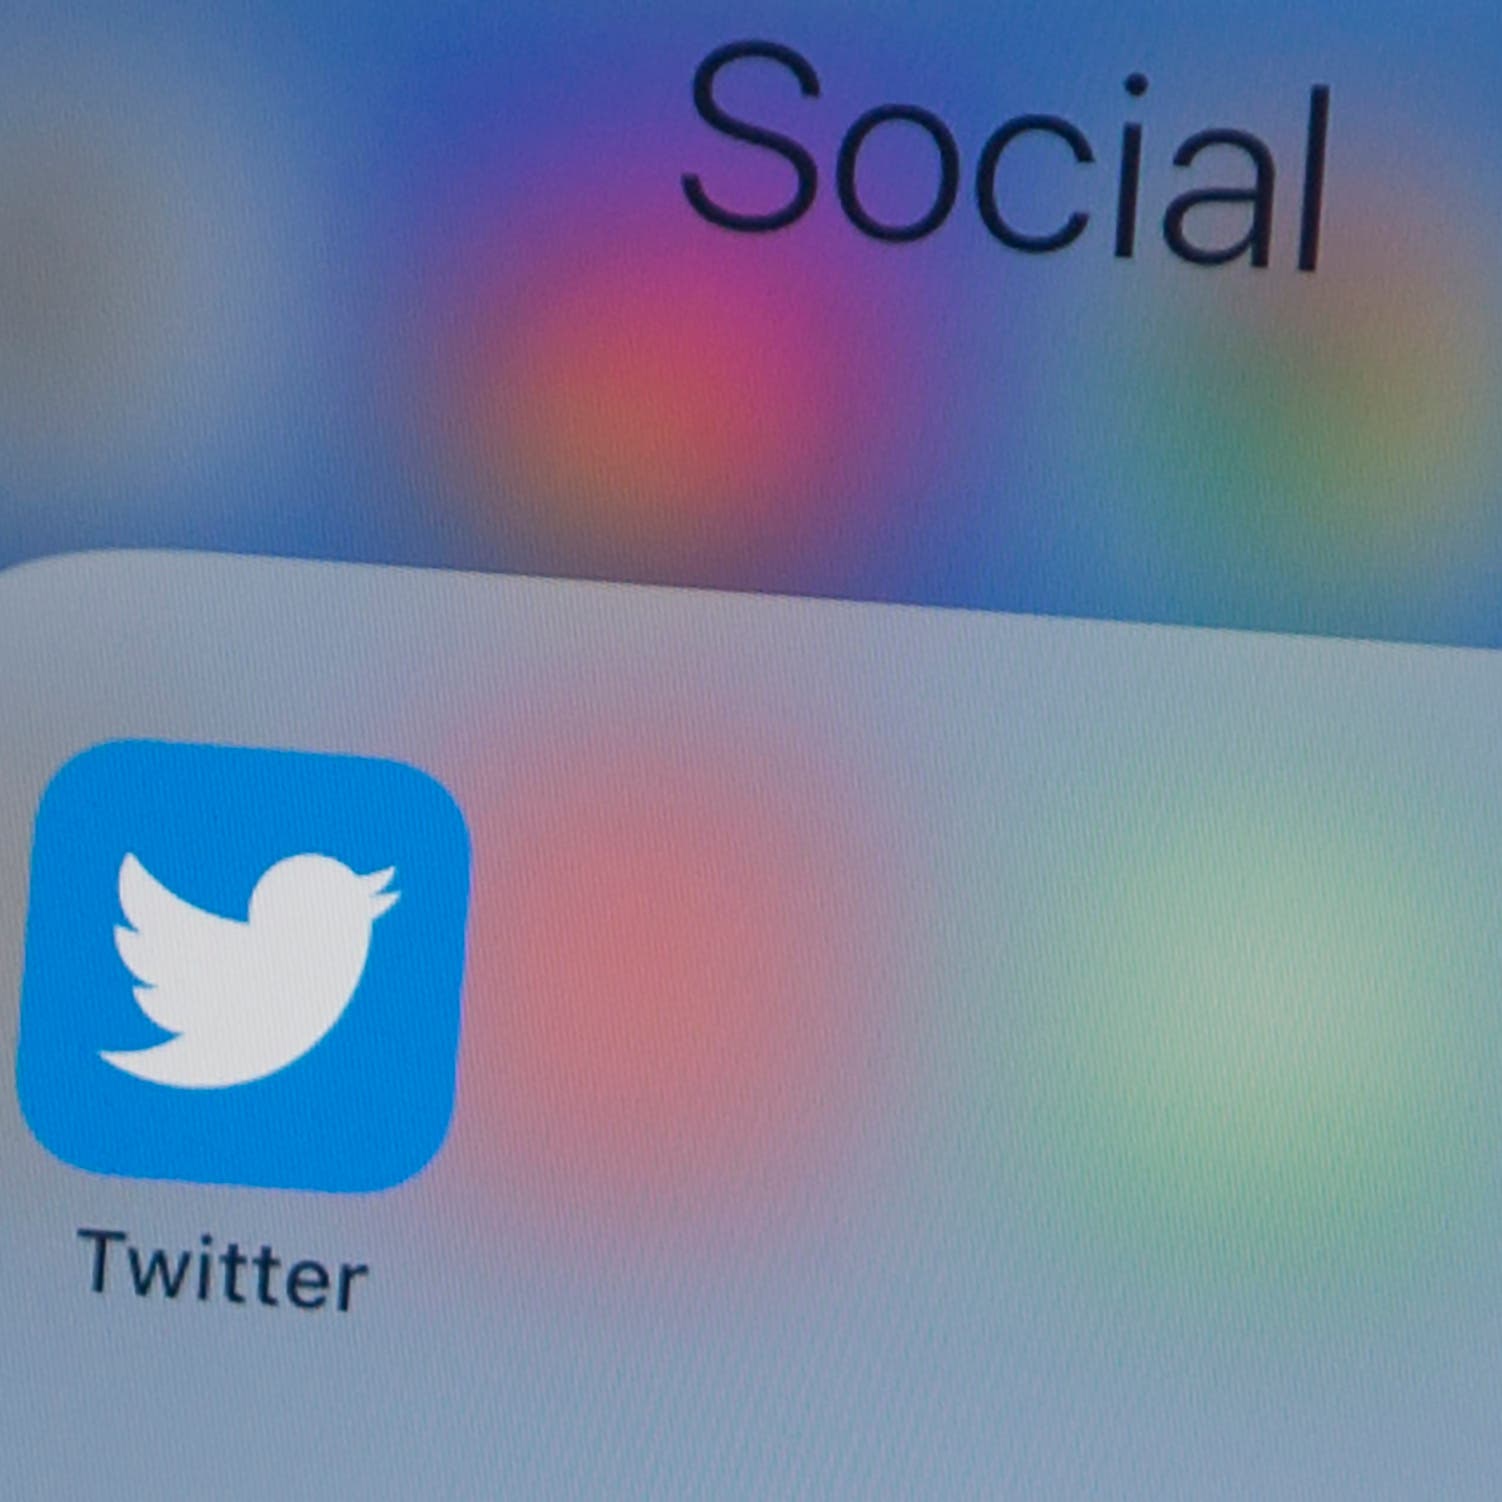 توجيه تهم لـ3 شبان في عملية اختراق حسابات "تويتر"